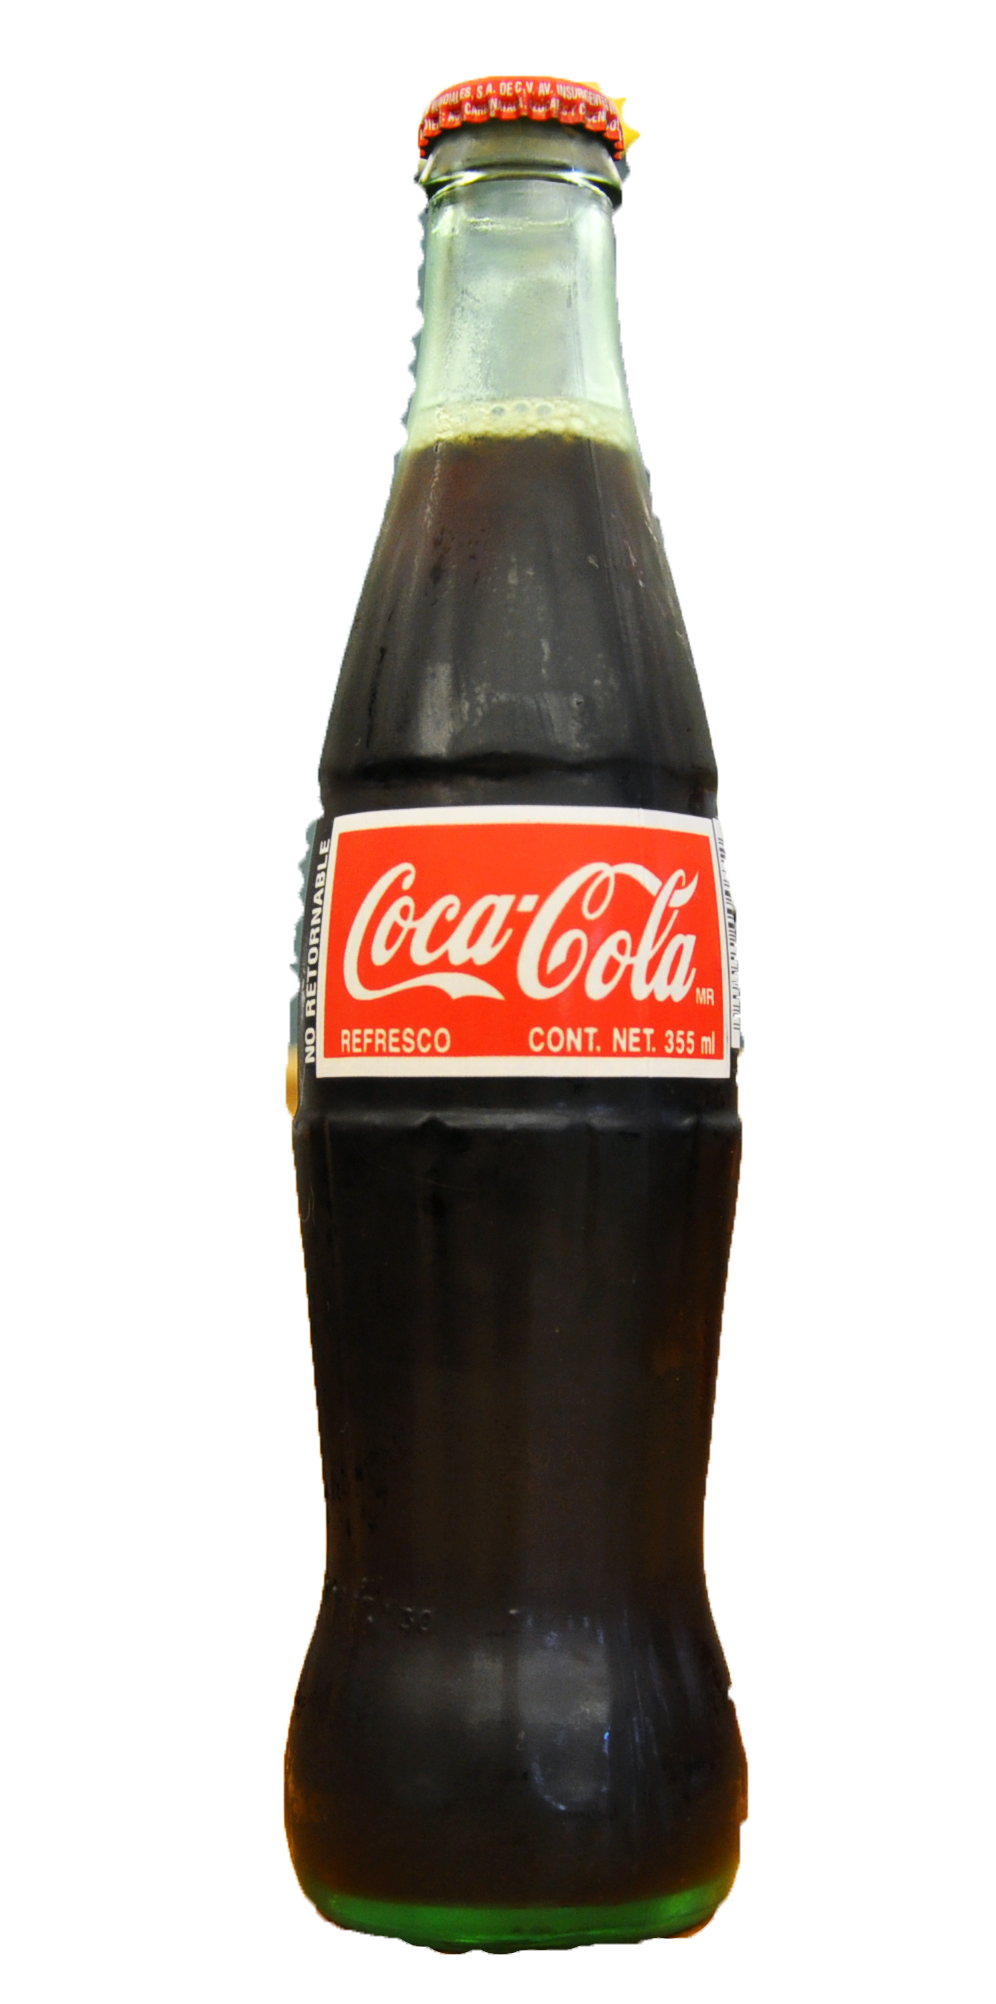 コカ・コーラのガラス瓶